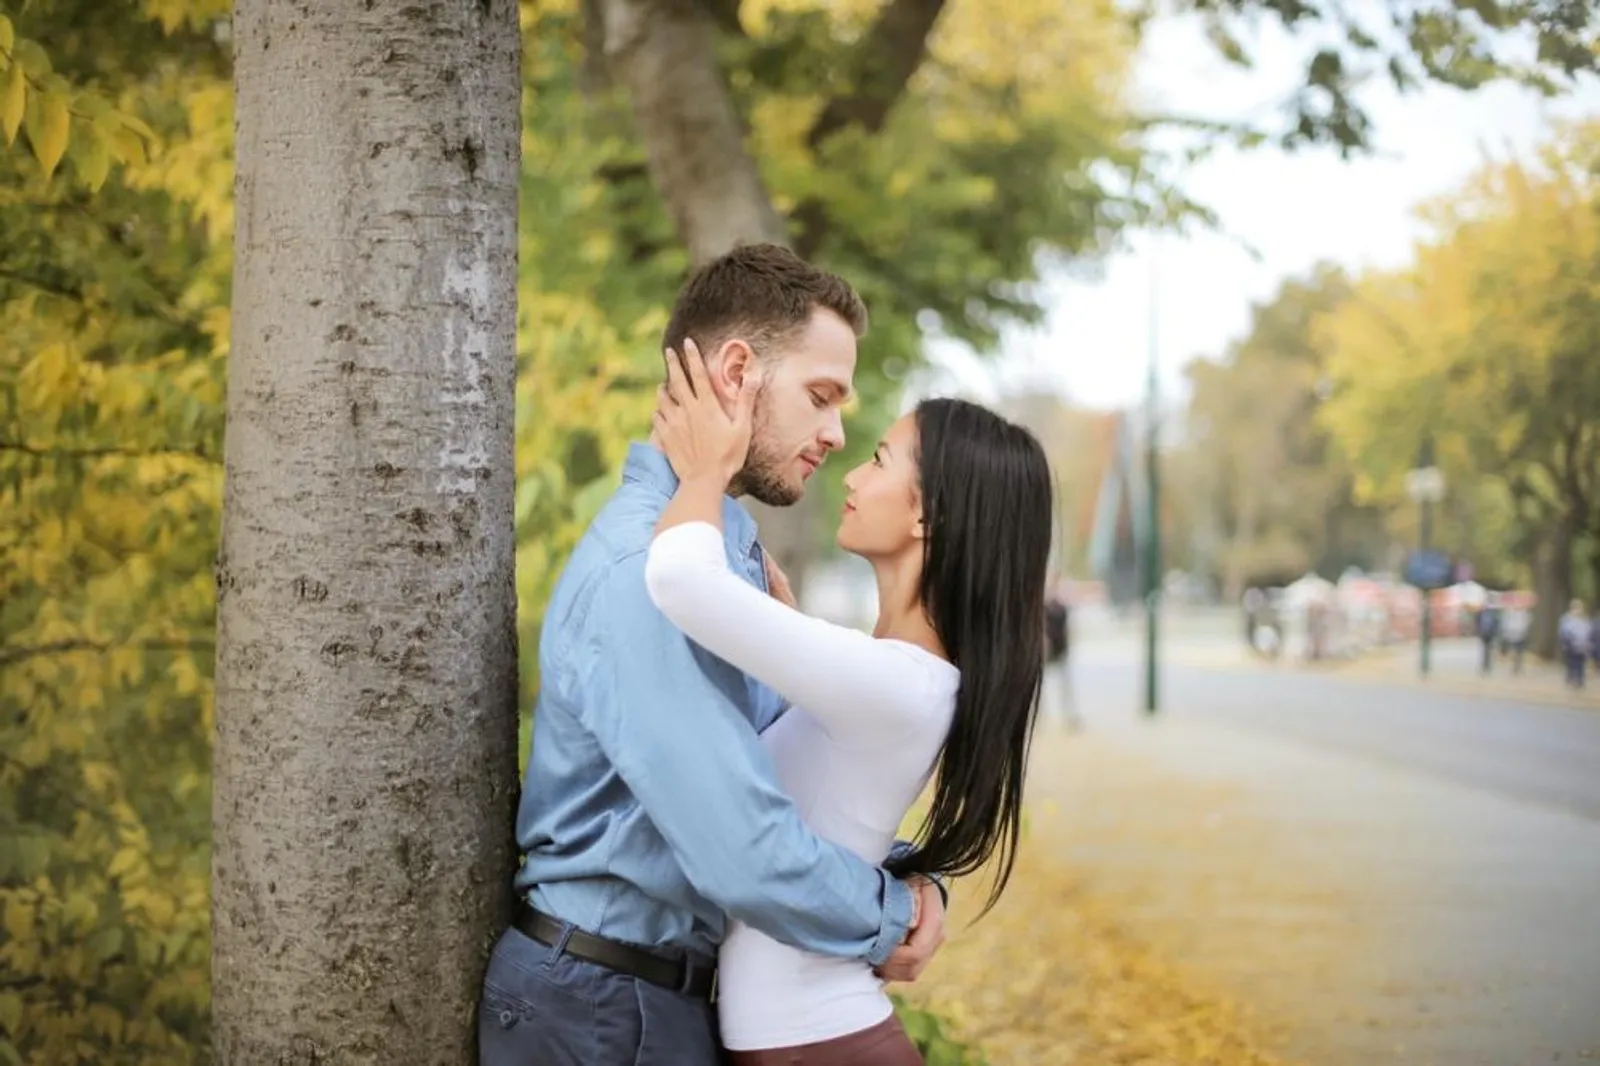 5 Fase Hubungan yang Akan Dialami Setiap Pasangan